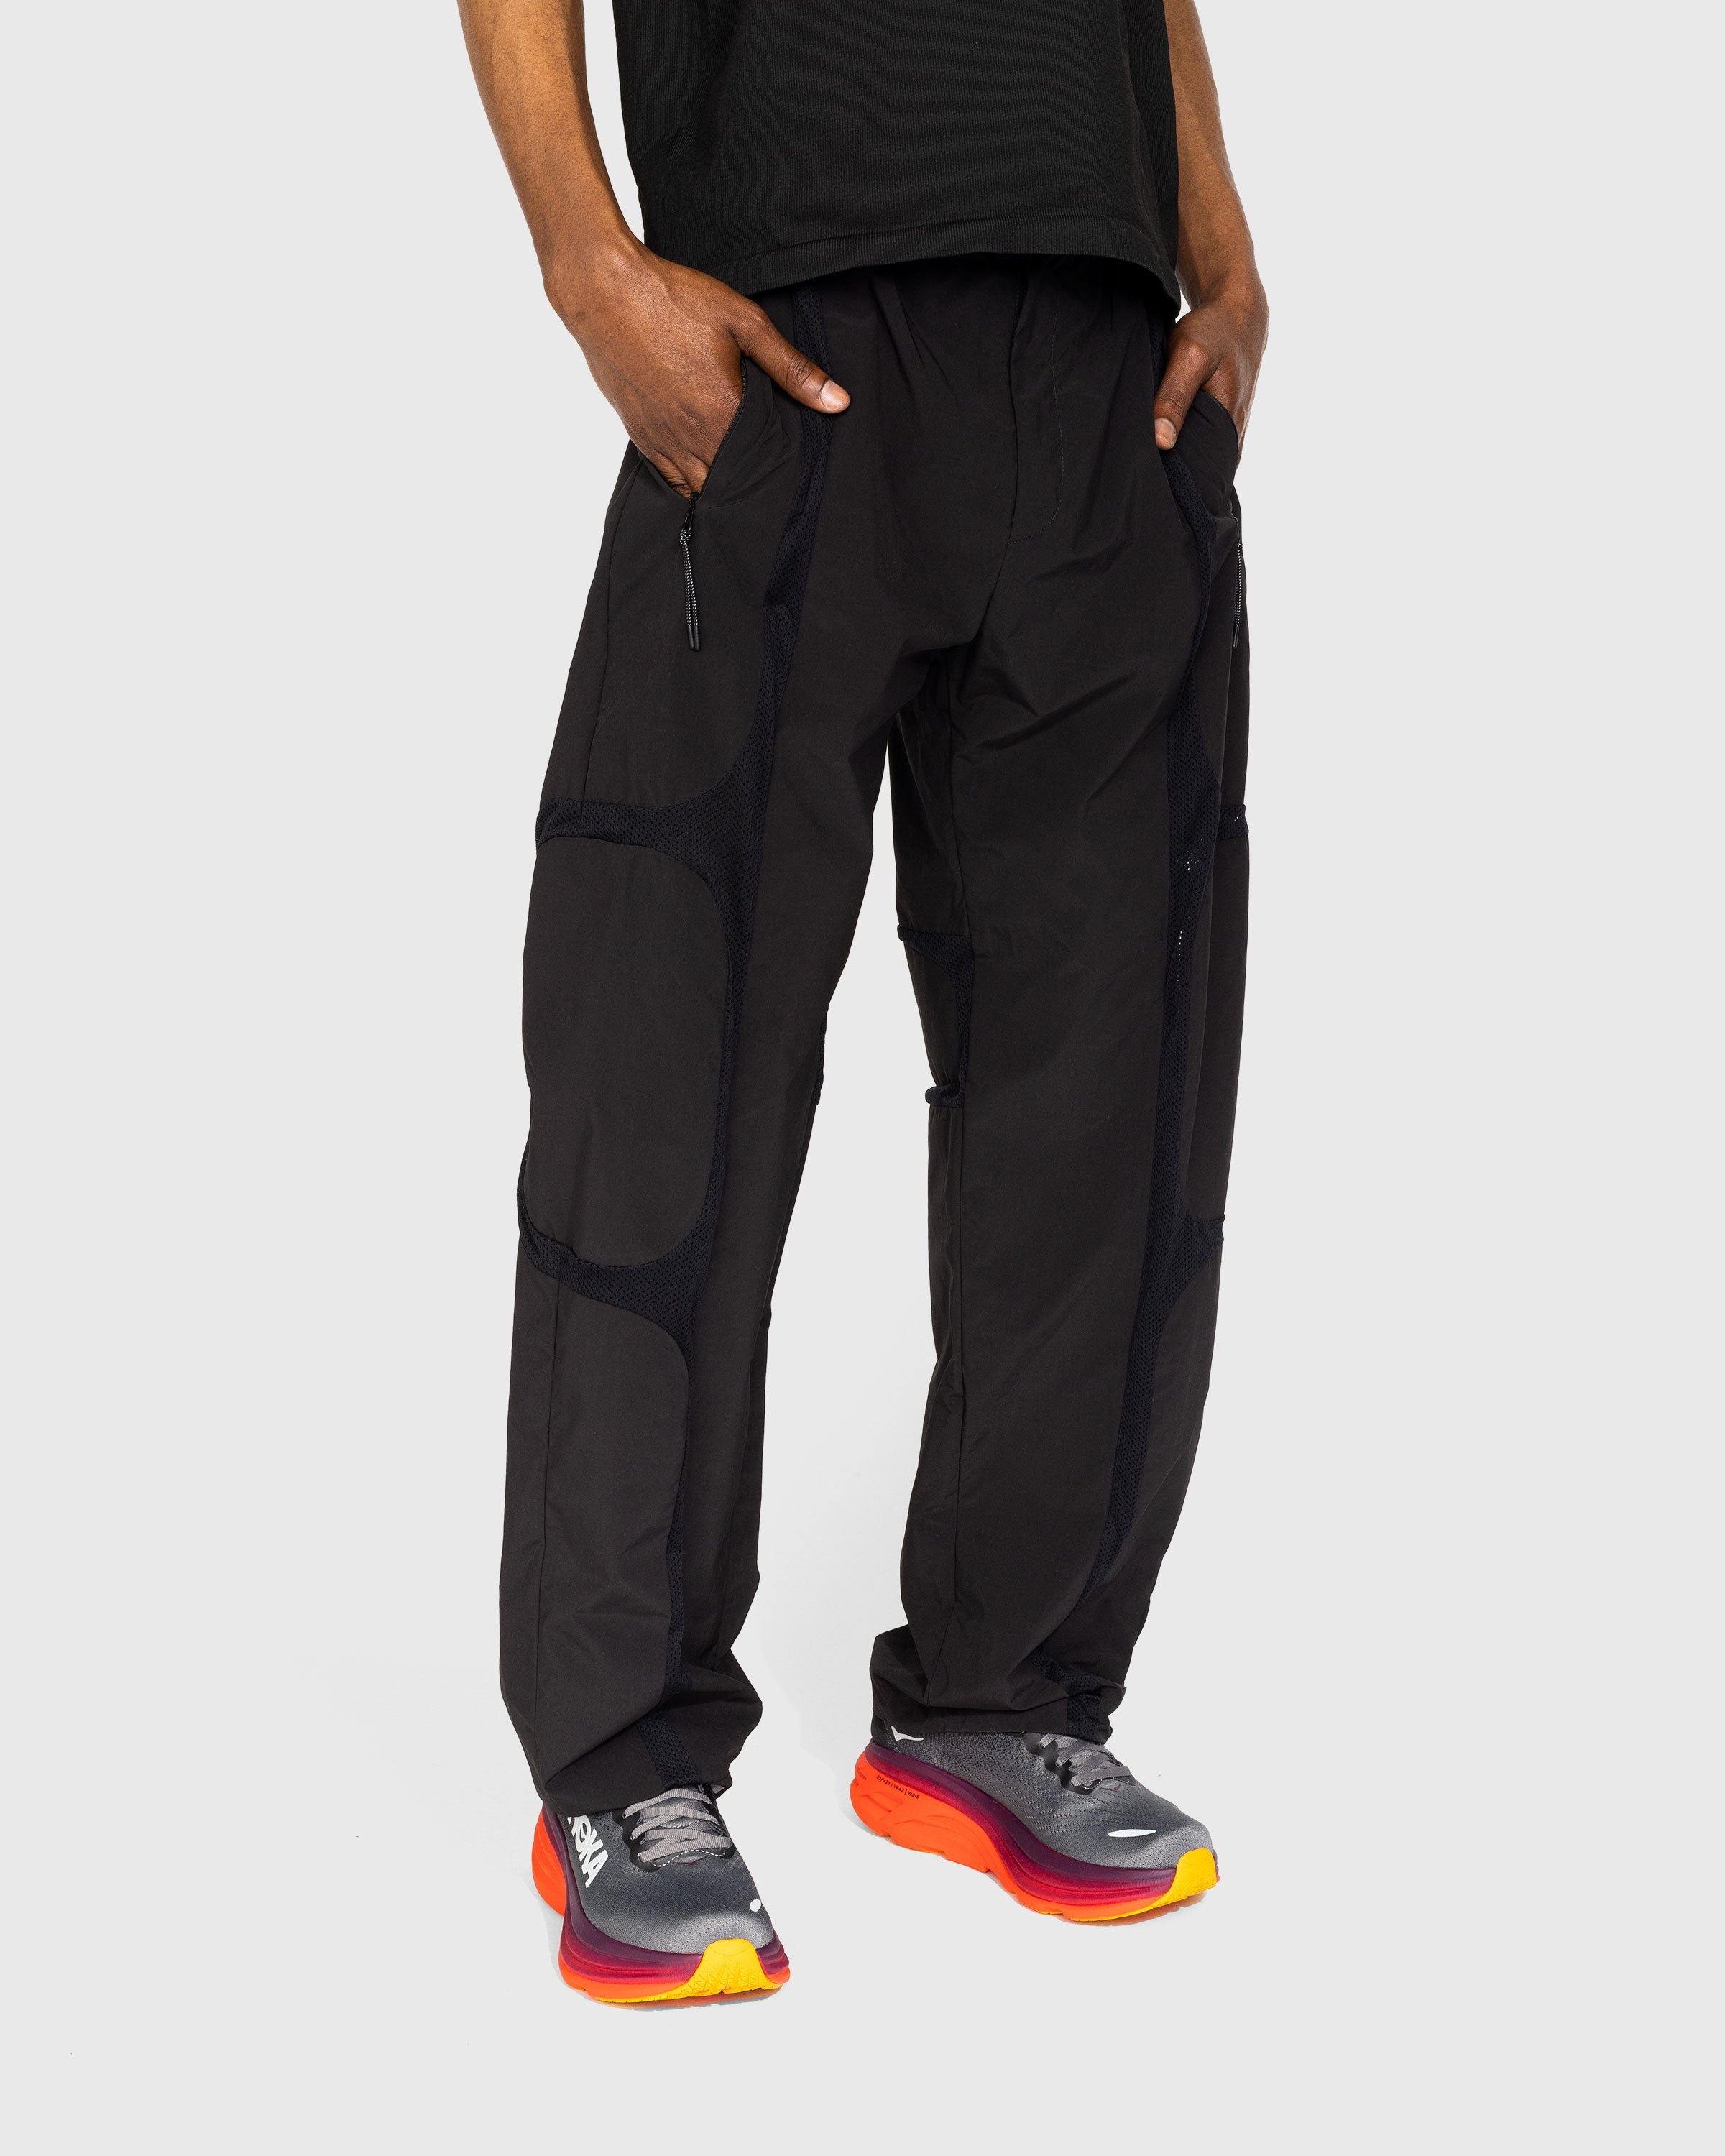 J.L-A.L – Zephyr Trousers Black - Pants - Black - Image 2